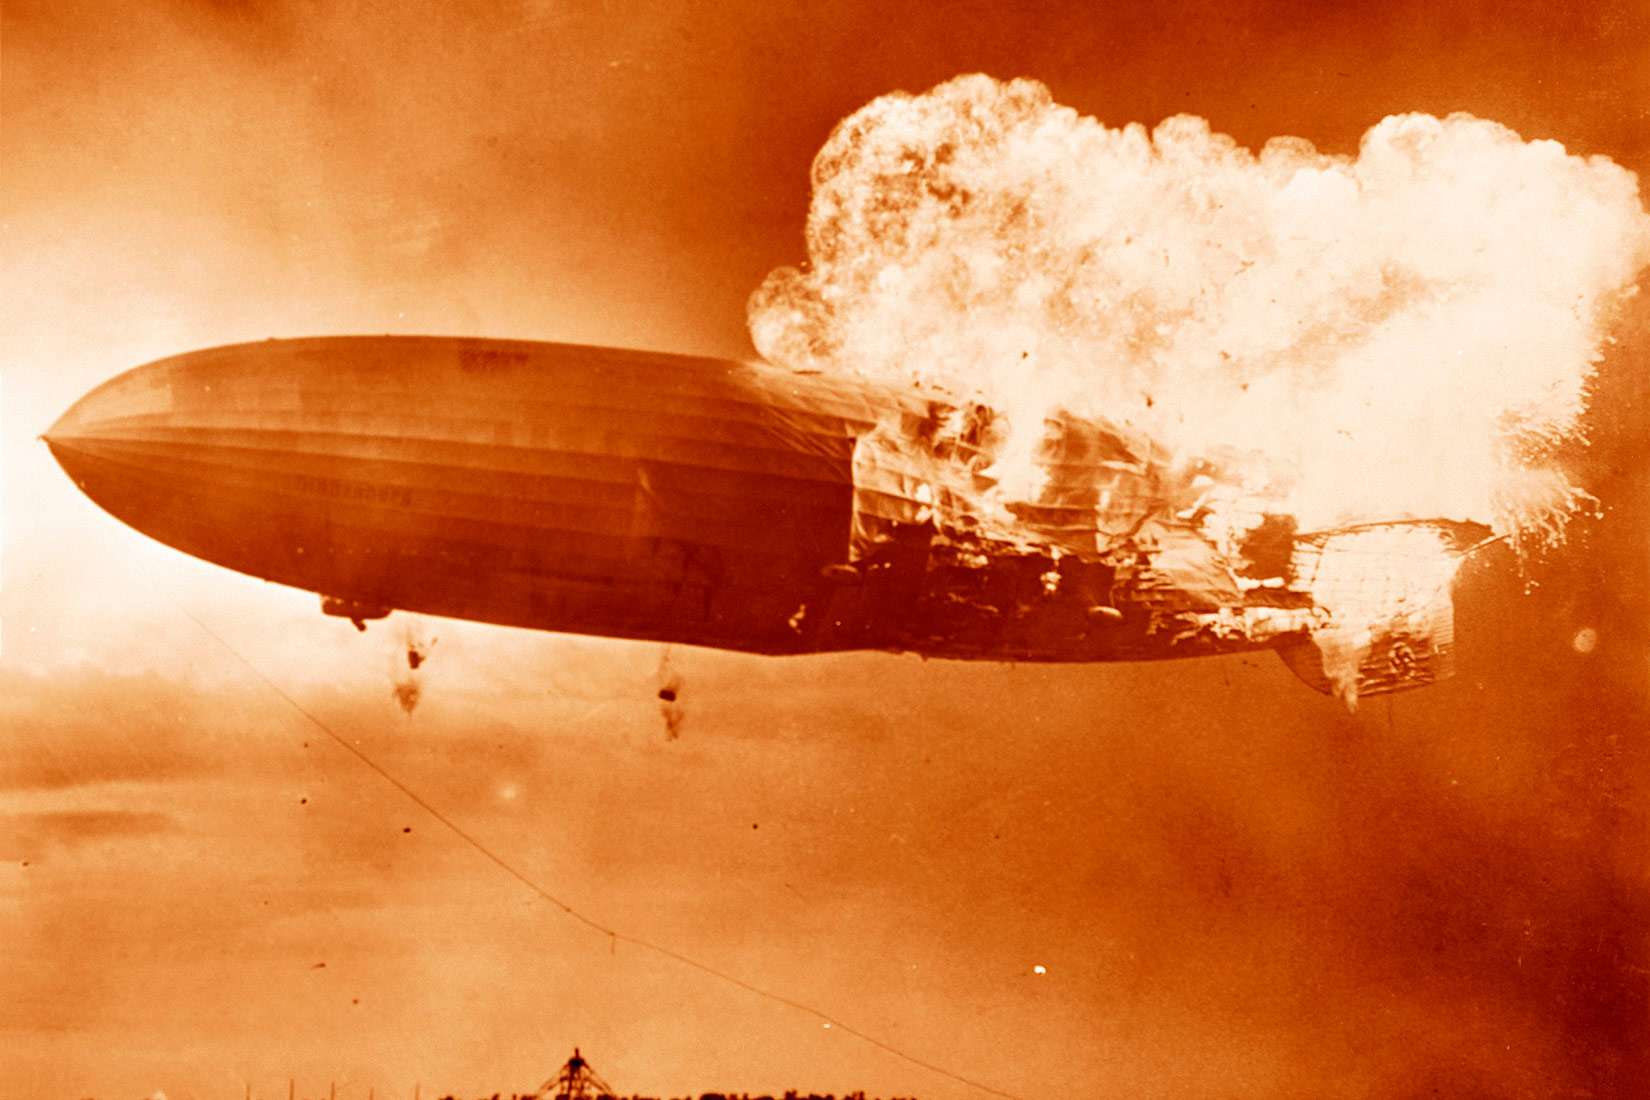 Na fotografiji je prikazana eksplzija putničkog cepelina Hindenburga. Njegov stražnji dio zahvačen je velikim plamenom, dok prednji dio još nije.Slika je prikazana u smeđim tonovima i svijetlećom buktinjom vatre.